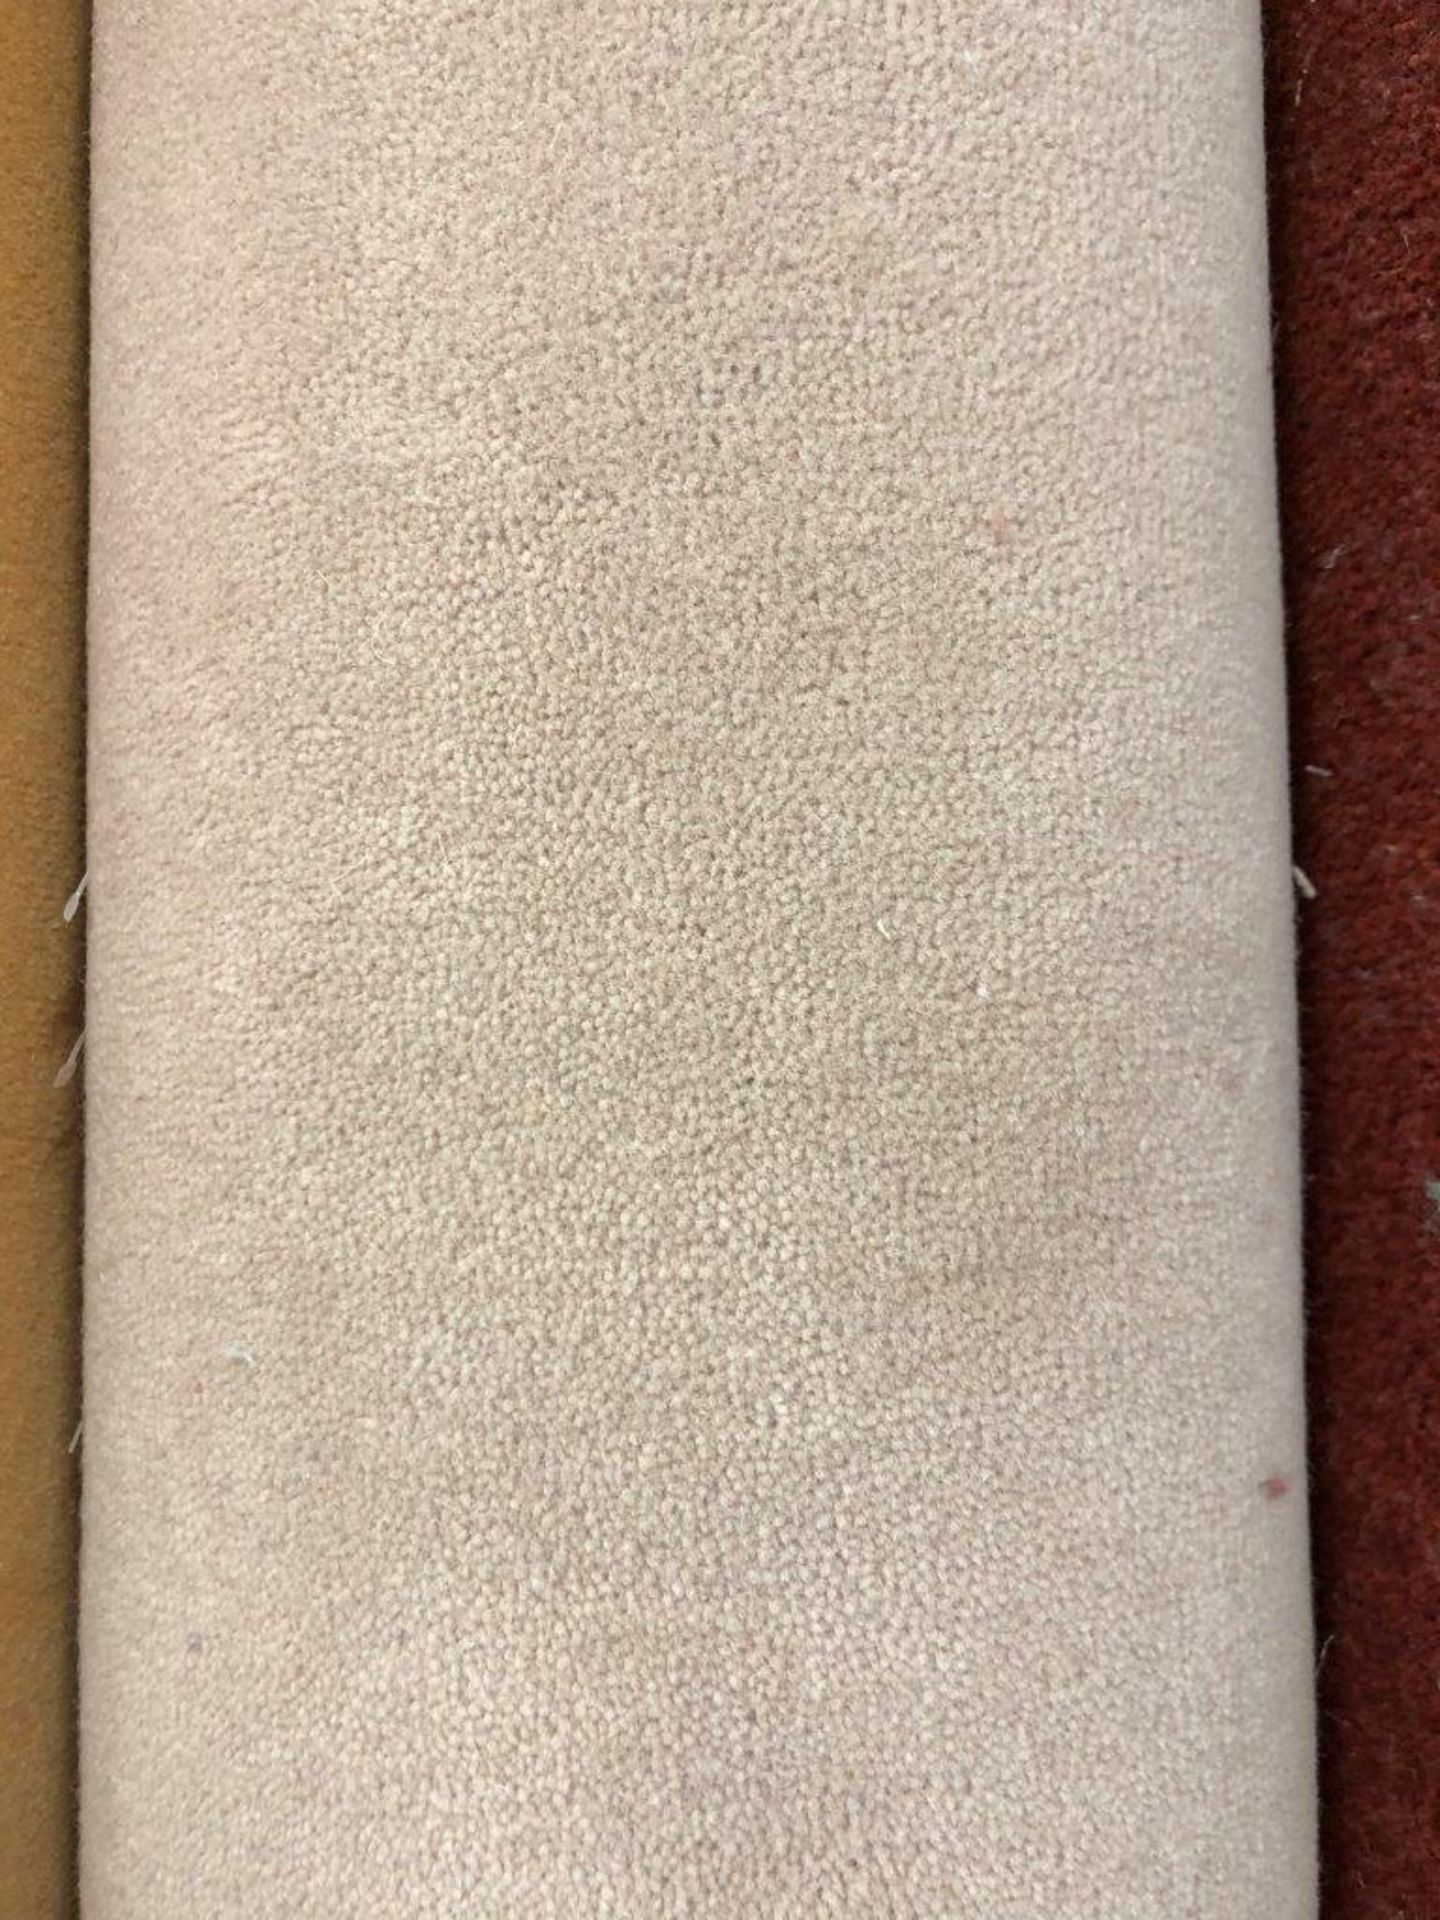 1 x Ryalux Carpet End Roll - Beige 2.8x5.0m2 - Image 3 of 3